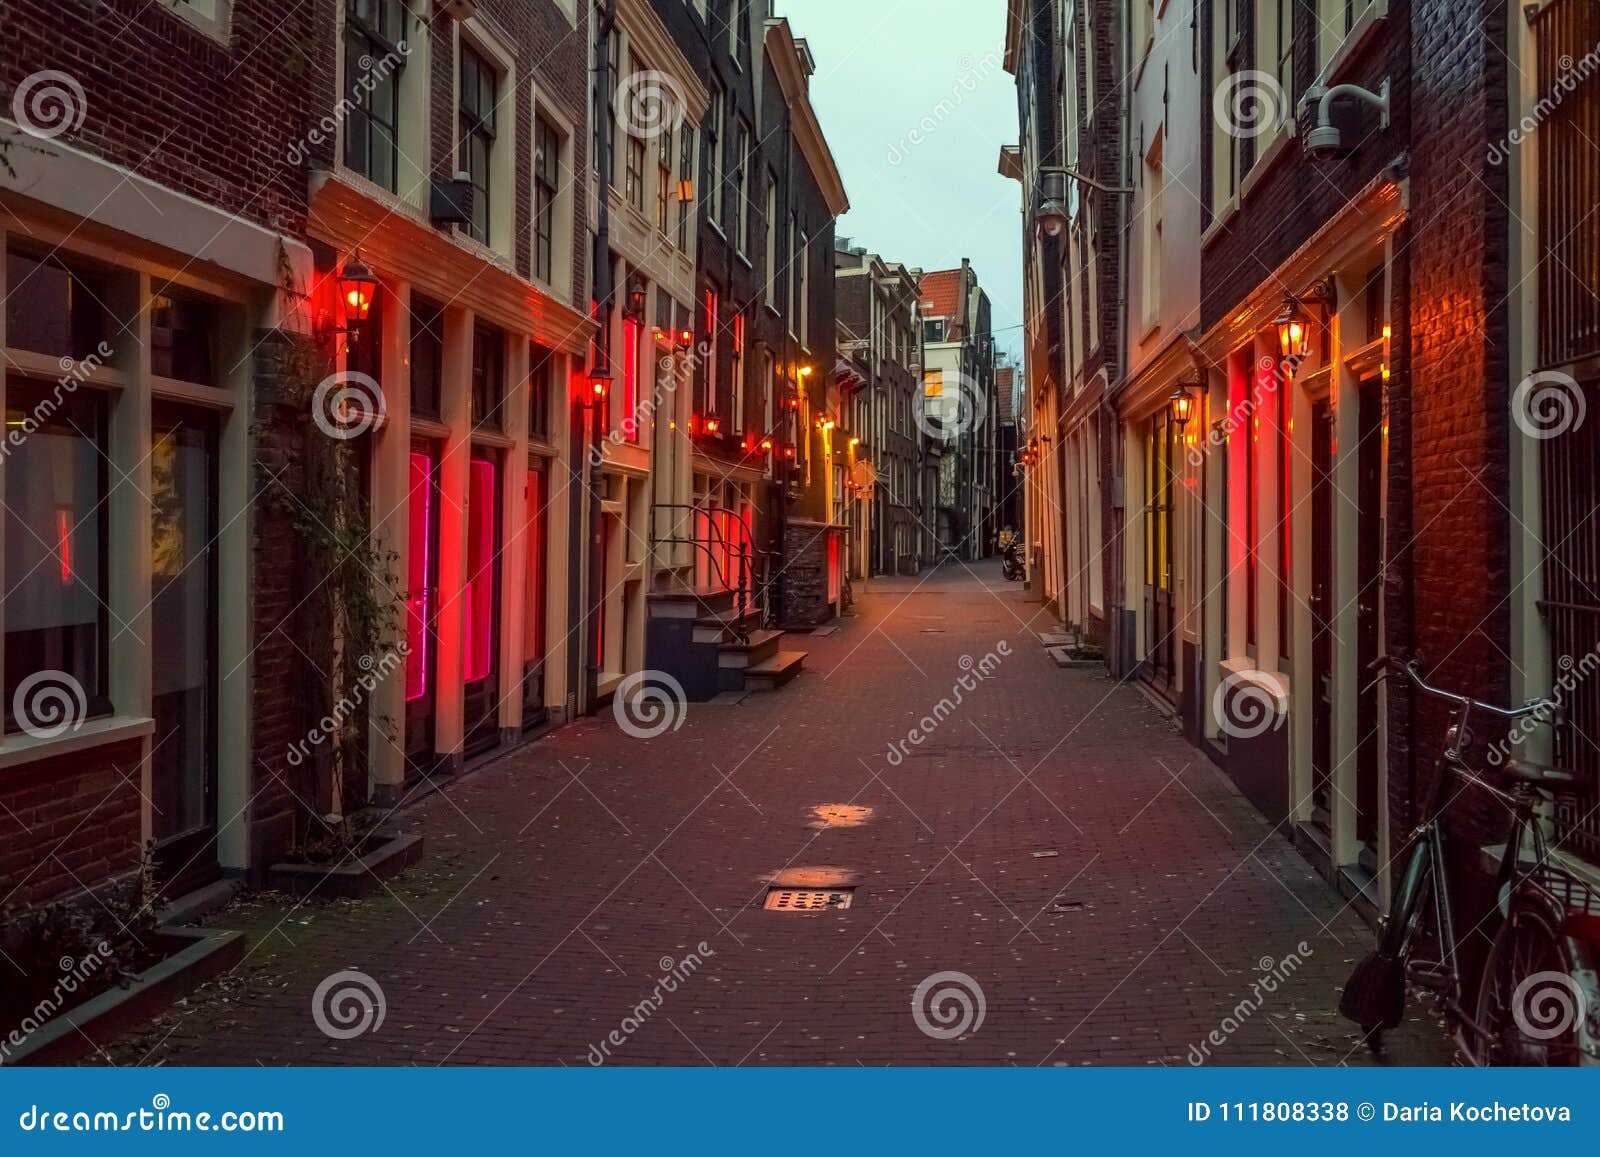 游客暴涨性工作者不胜其扰，阿姆斯特丹红灯区对旅游团说不|界面新闻 · 天下